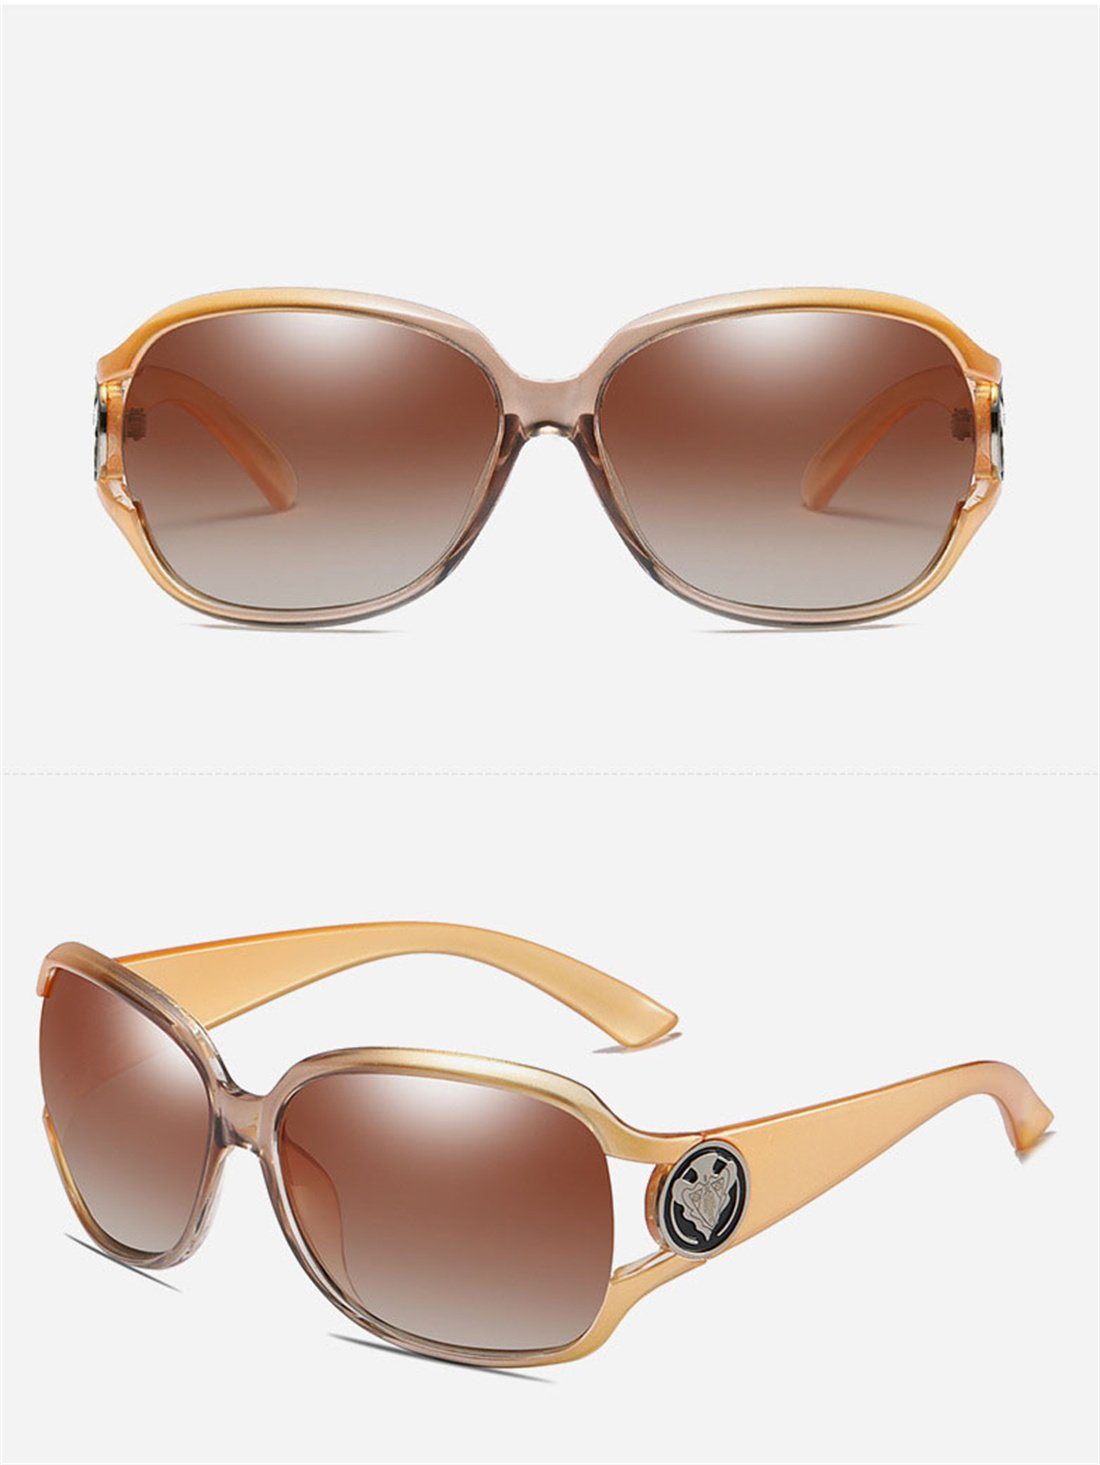 DÖRÖY Sonnenbrille Polarisierende Sonnenbrillen Frauen, Outdoor-Sonnenbrillen für